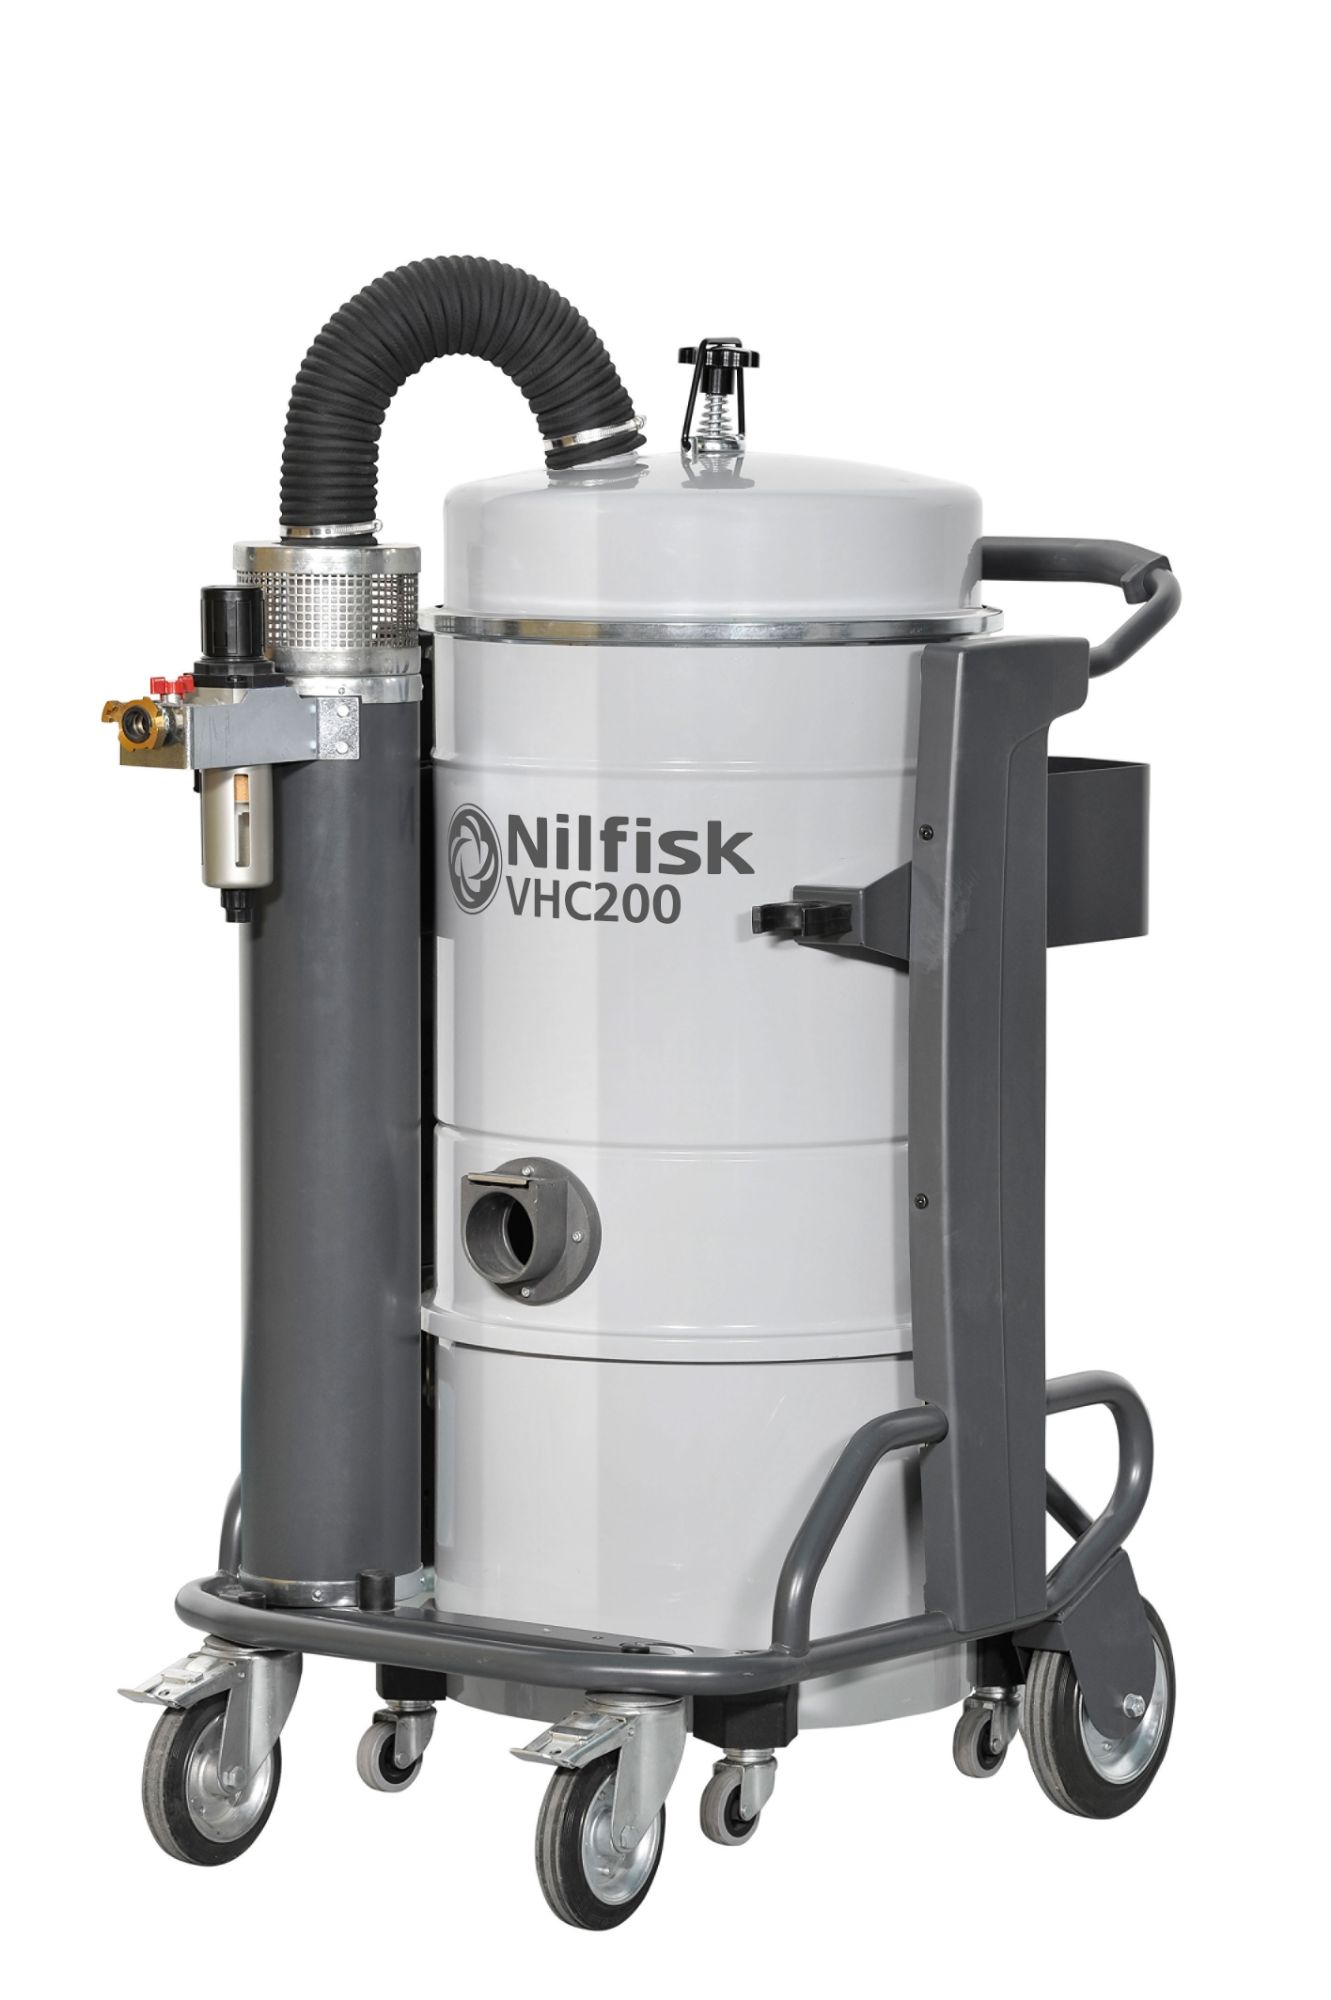 Nilfisk VHC200 Industrial Vacuum